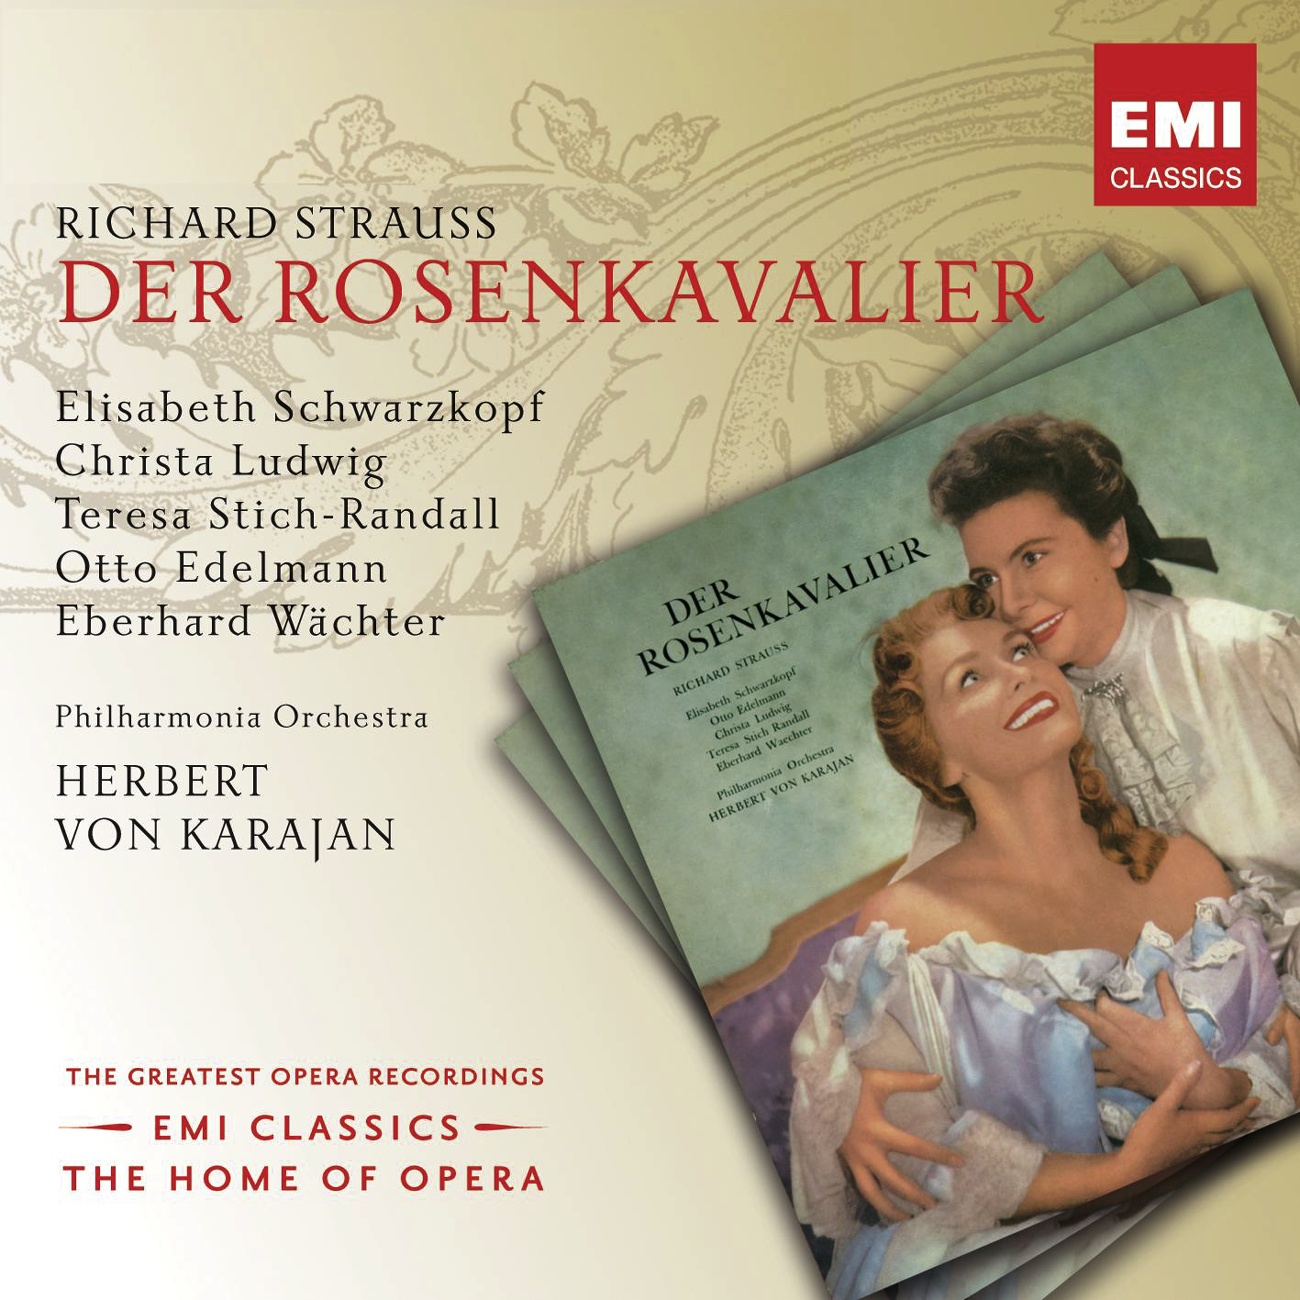 Der Rosenkavalier (2001 Digital Remaster), Act I: Geben mir Euer Gnaden den Grasaff' da (Ochs/Octavian/Marschallin)